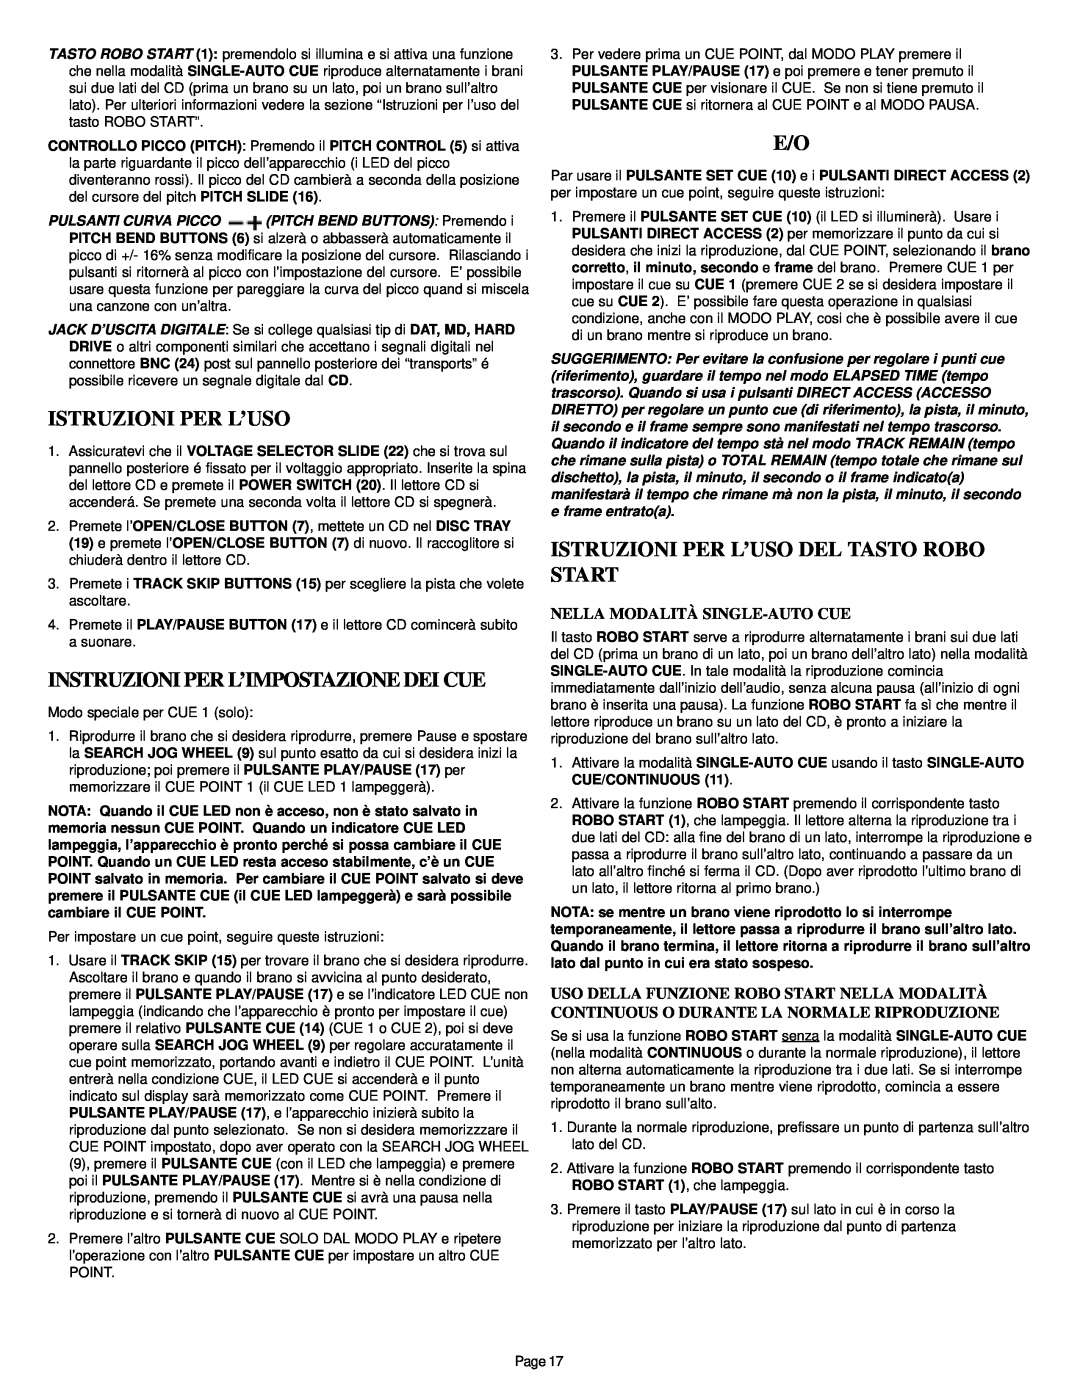 Gemini CD-340 manual Instruzioni Per L’Impostazione Dei Cue, Istruzioni Per L’Uso Del Tasto Robo Start 